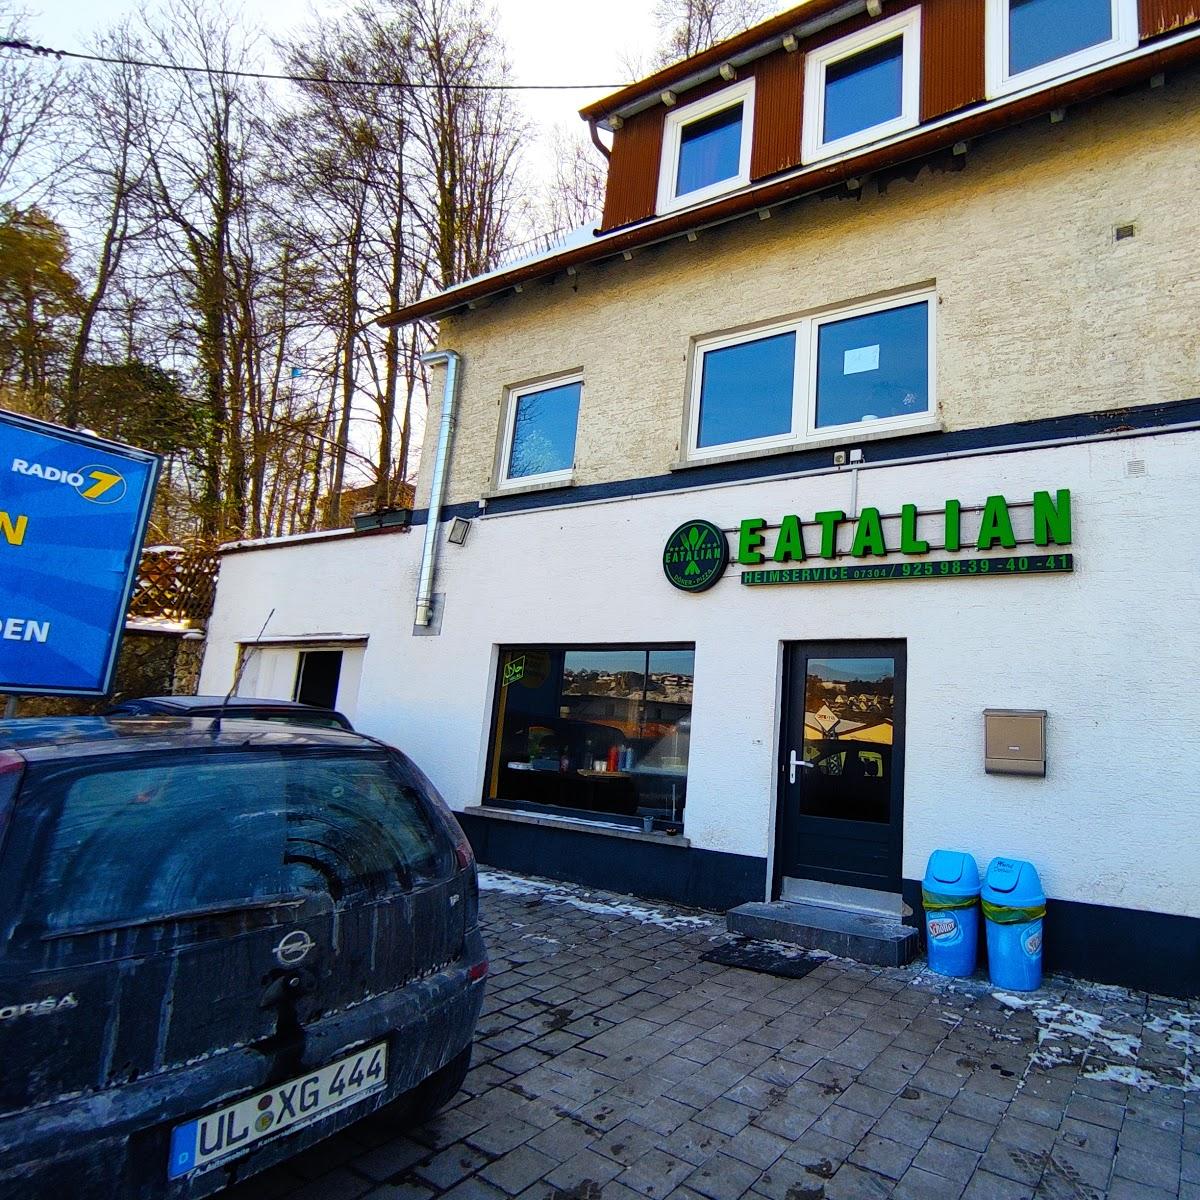 Restaurant "Eatalian Döner pizza" in Blaustein